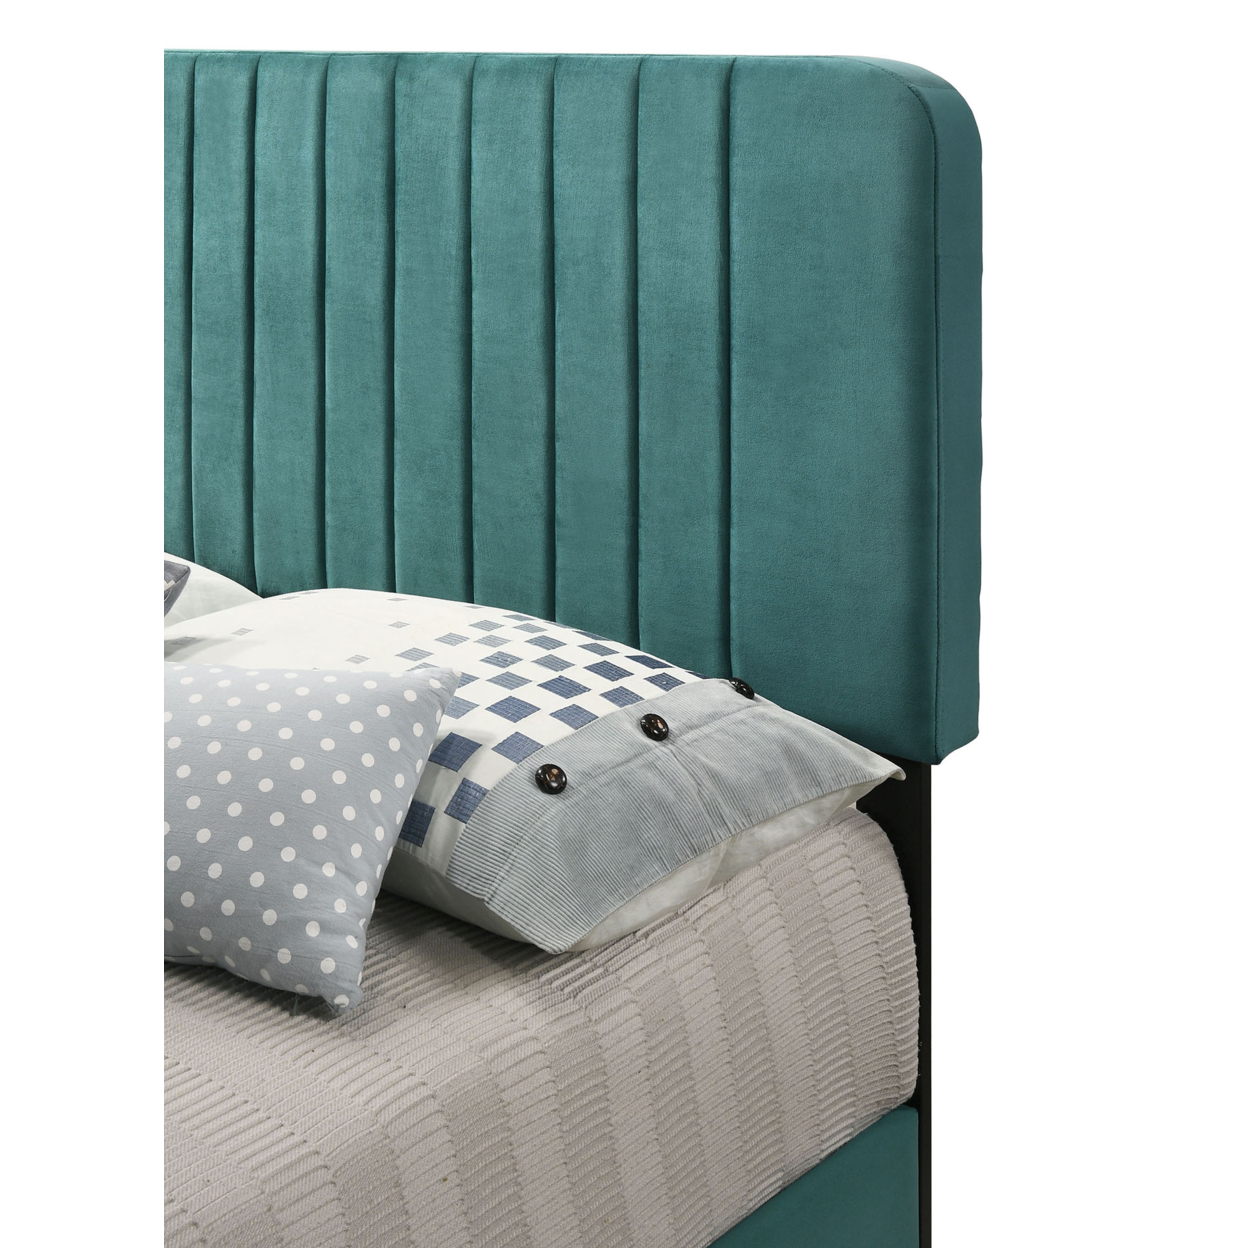 Home Bedroom Furniture Lodi Green Velvet Upholstered Channel Tufted Full Panel Bed - image 4 of 5